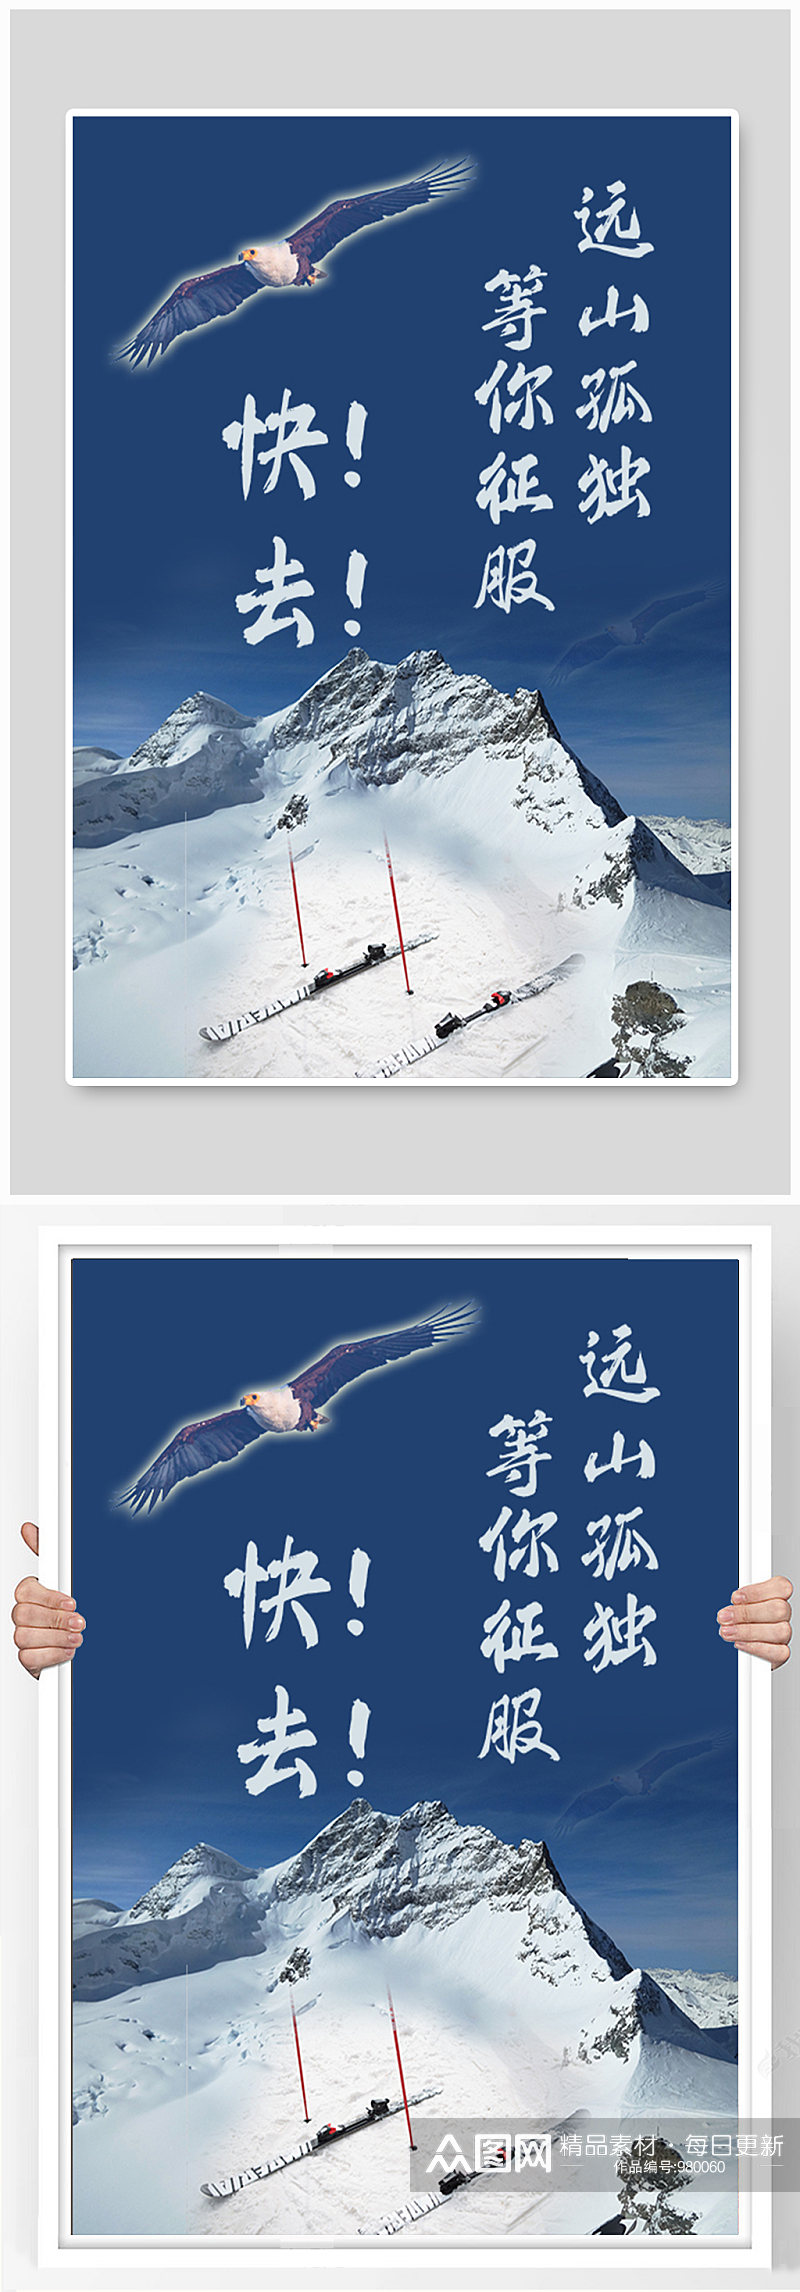 激情滑雪运动海报素材